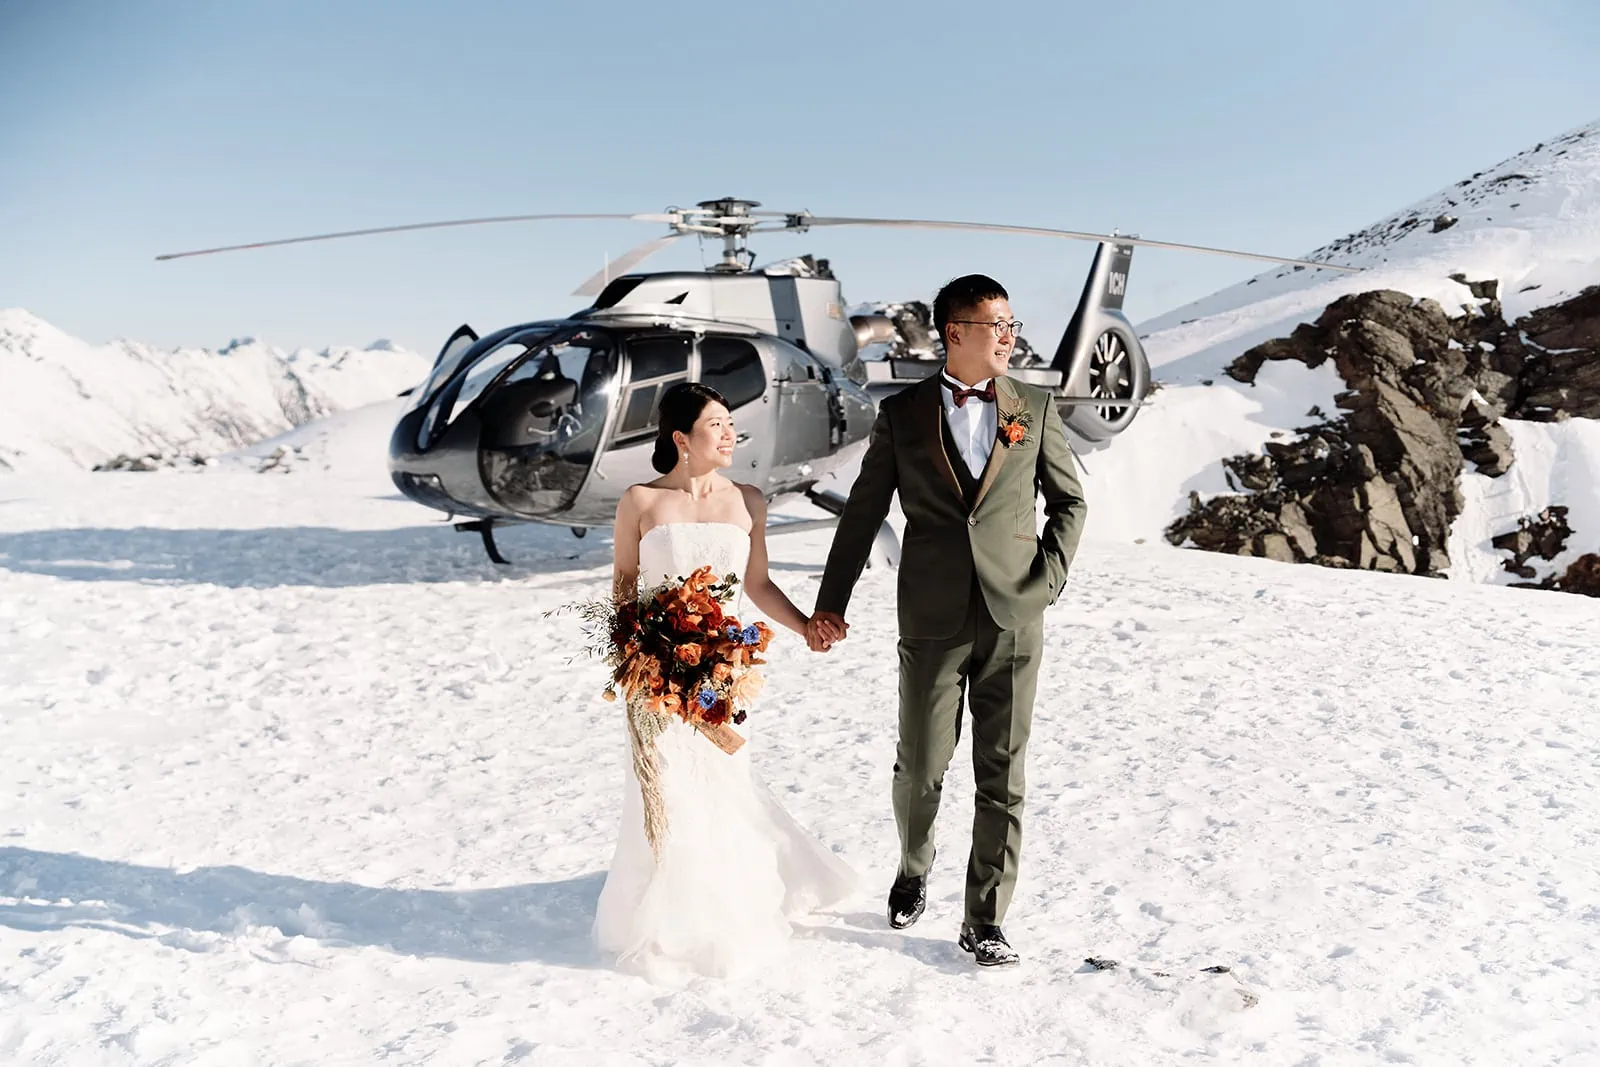 Queenstown New Zealand Elopement Wedding Photographer - Keywords: queenstown wedding photographer, helicopter